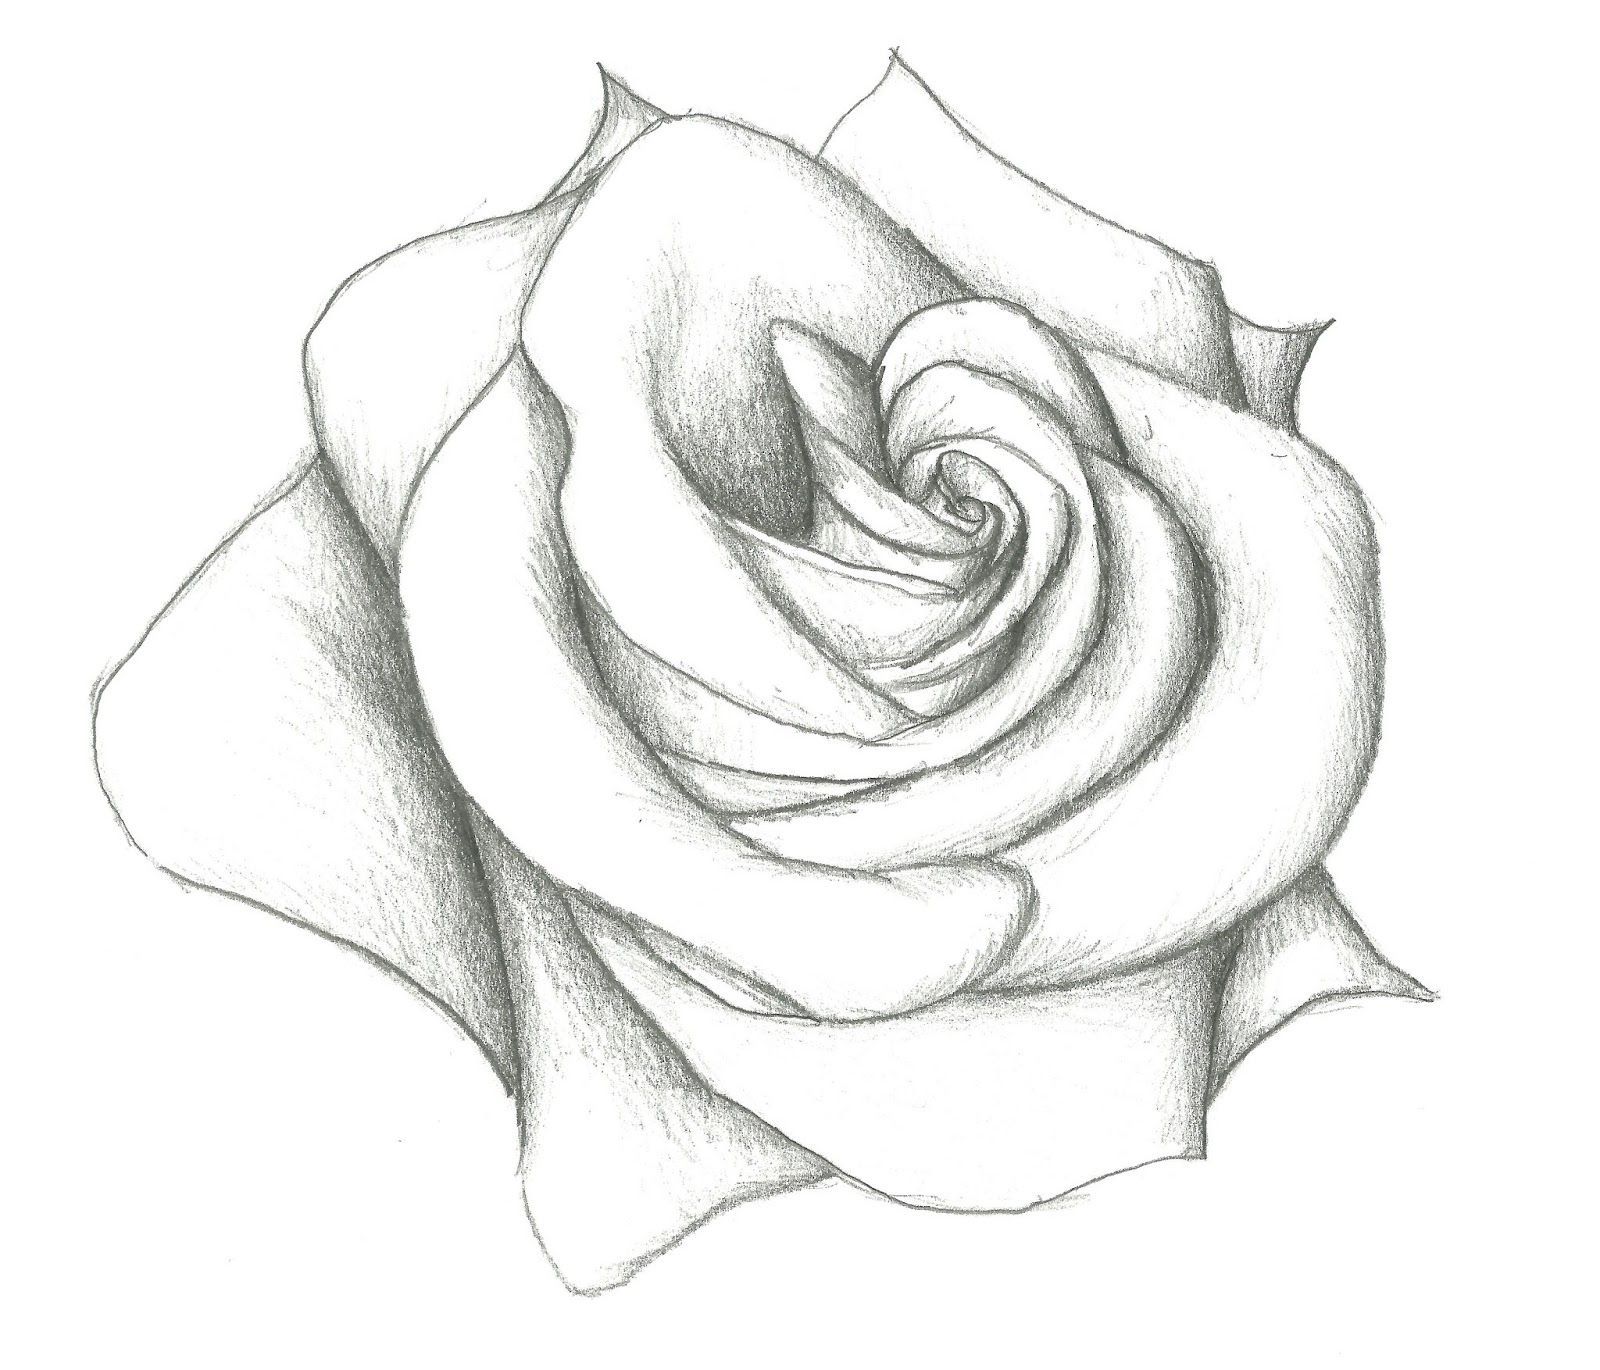 Vẽ hoa hồng đơn giản đẹp bằng bút chì  Go shopping happy